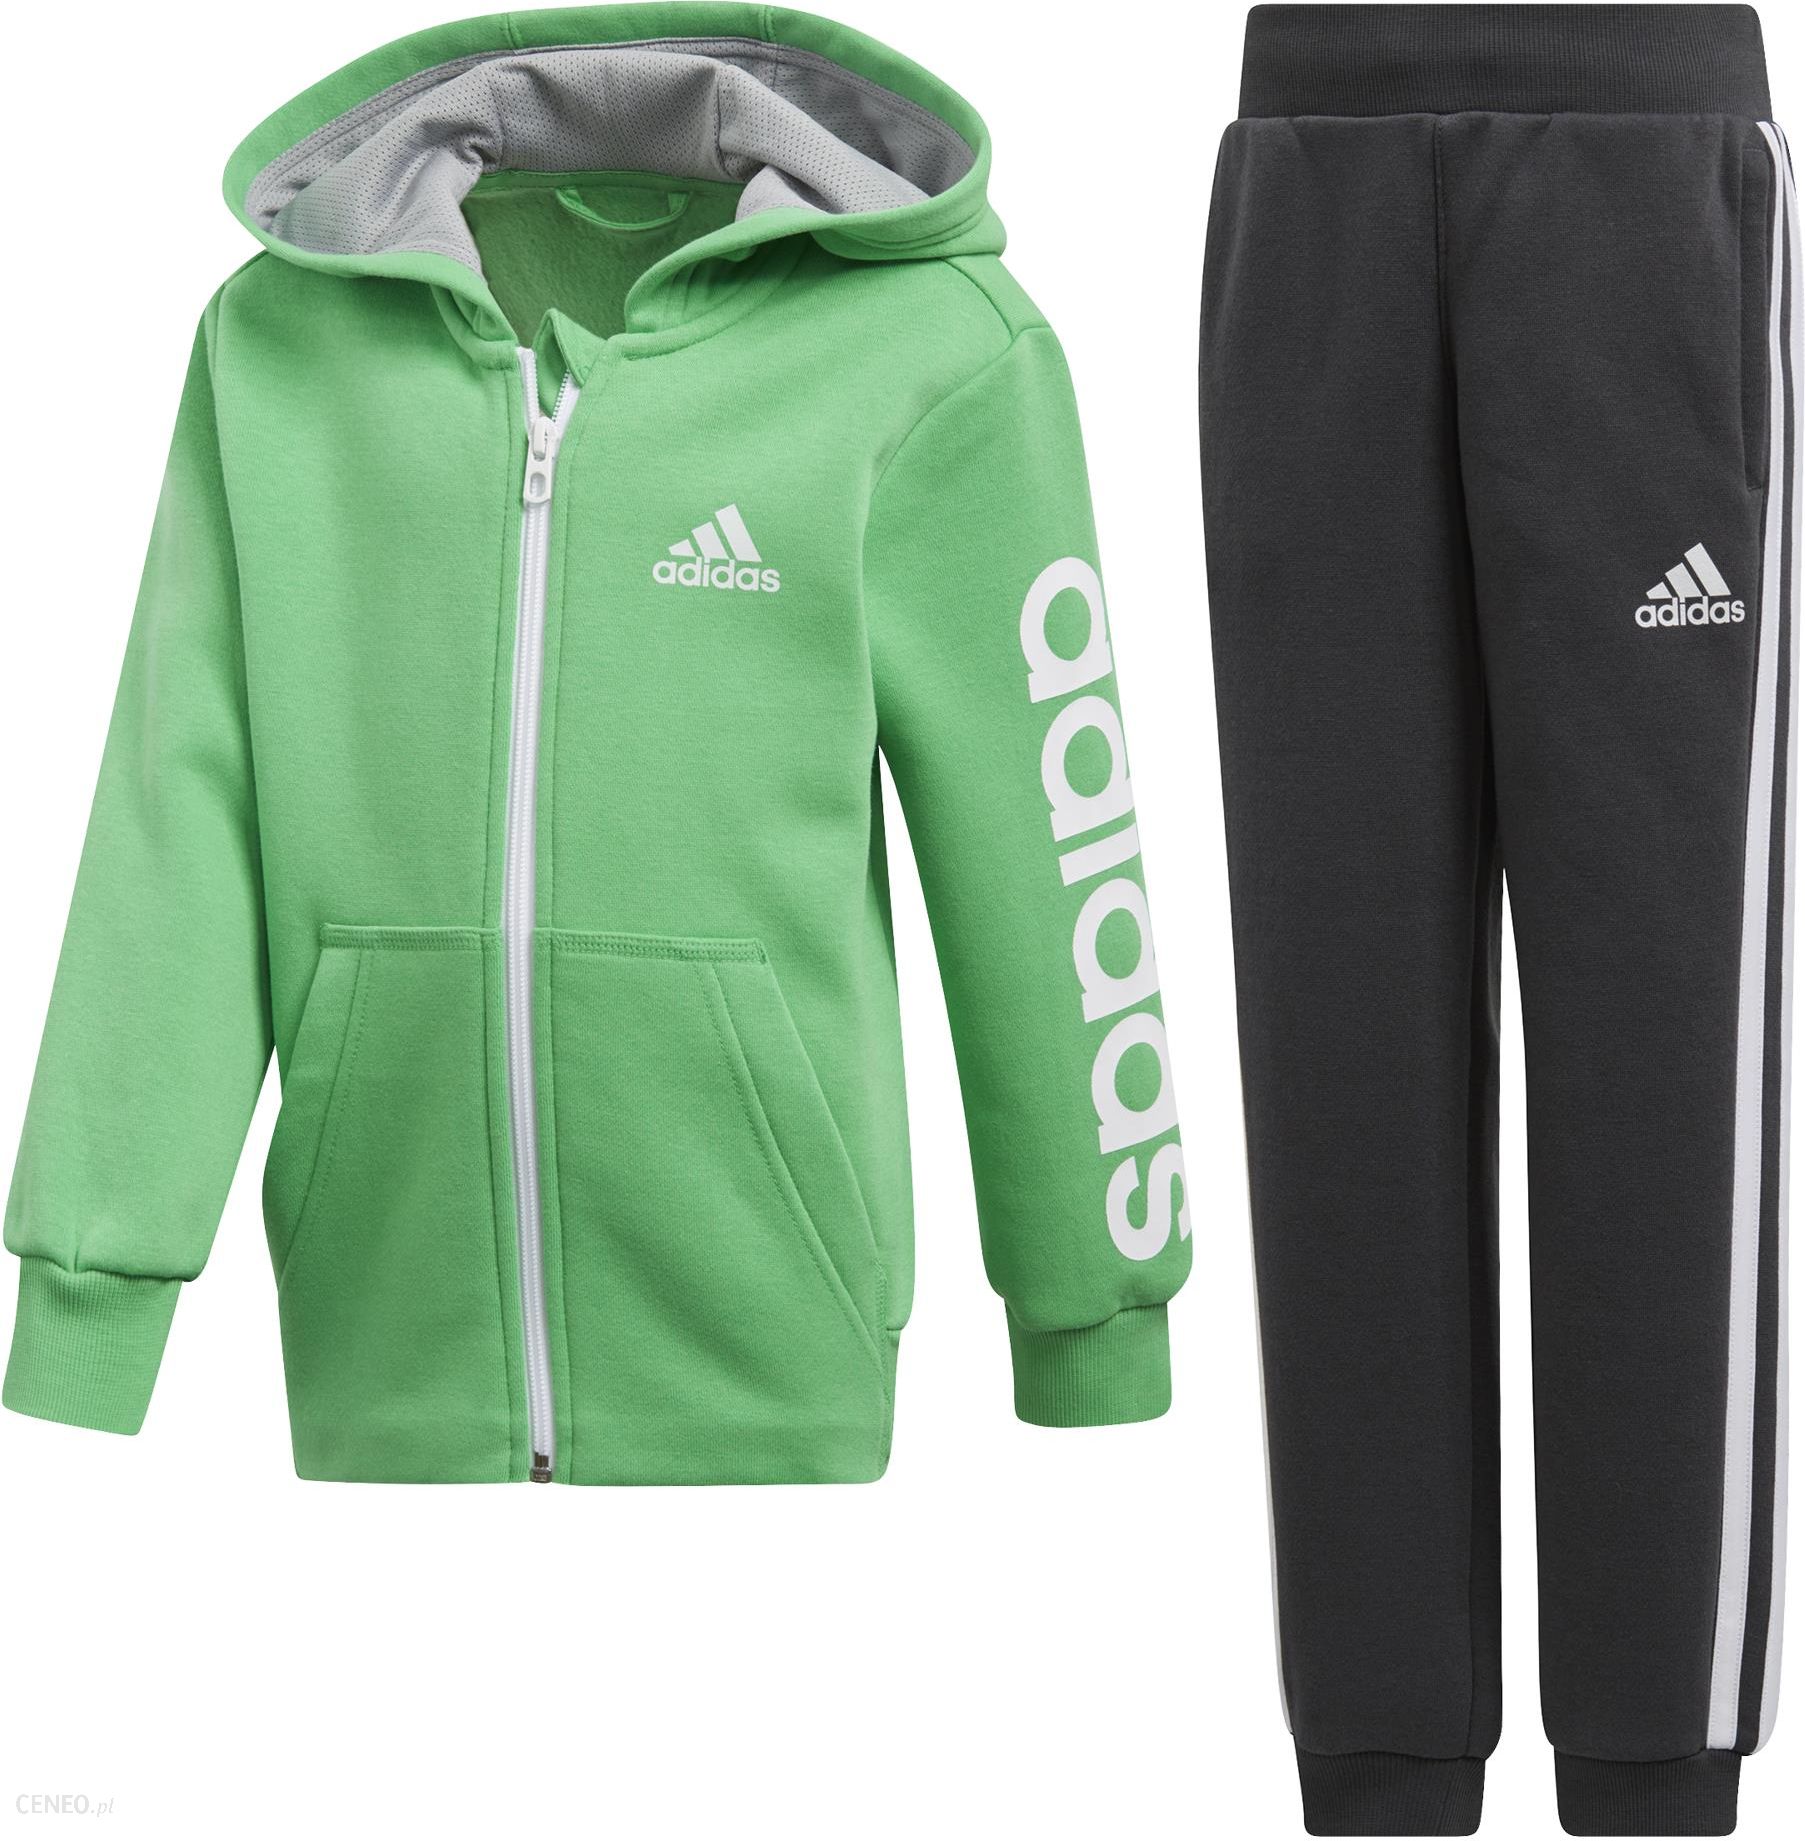 Адидас зеленый спортивный. Детский спортивный костюм for Kids adidas. Green adidas Tracksuit худи. Детский спортивный костюм адидас. Спортивный костюм адидас зеленый с капюшоном.